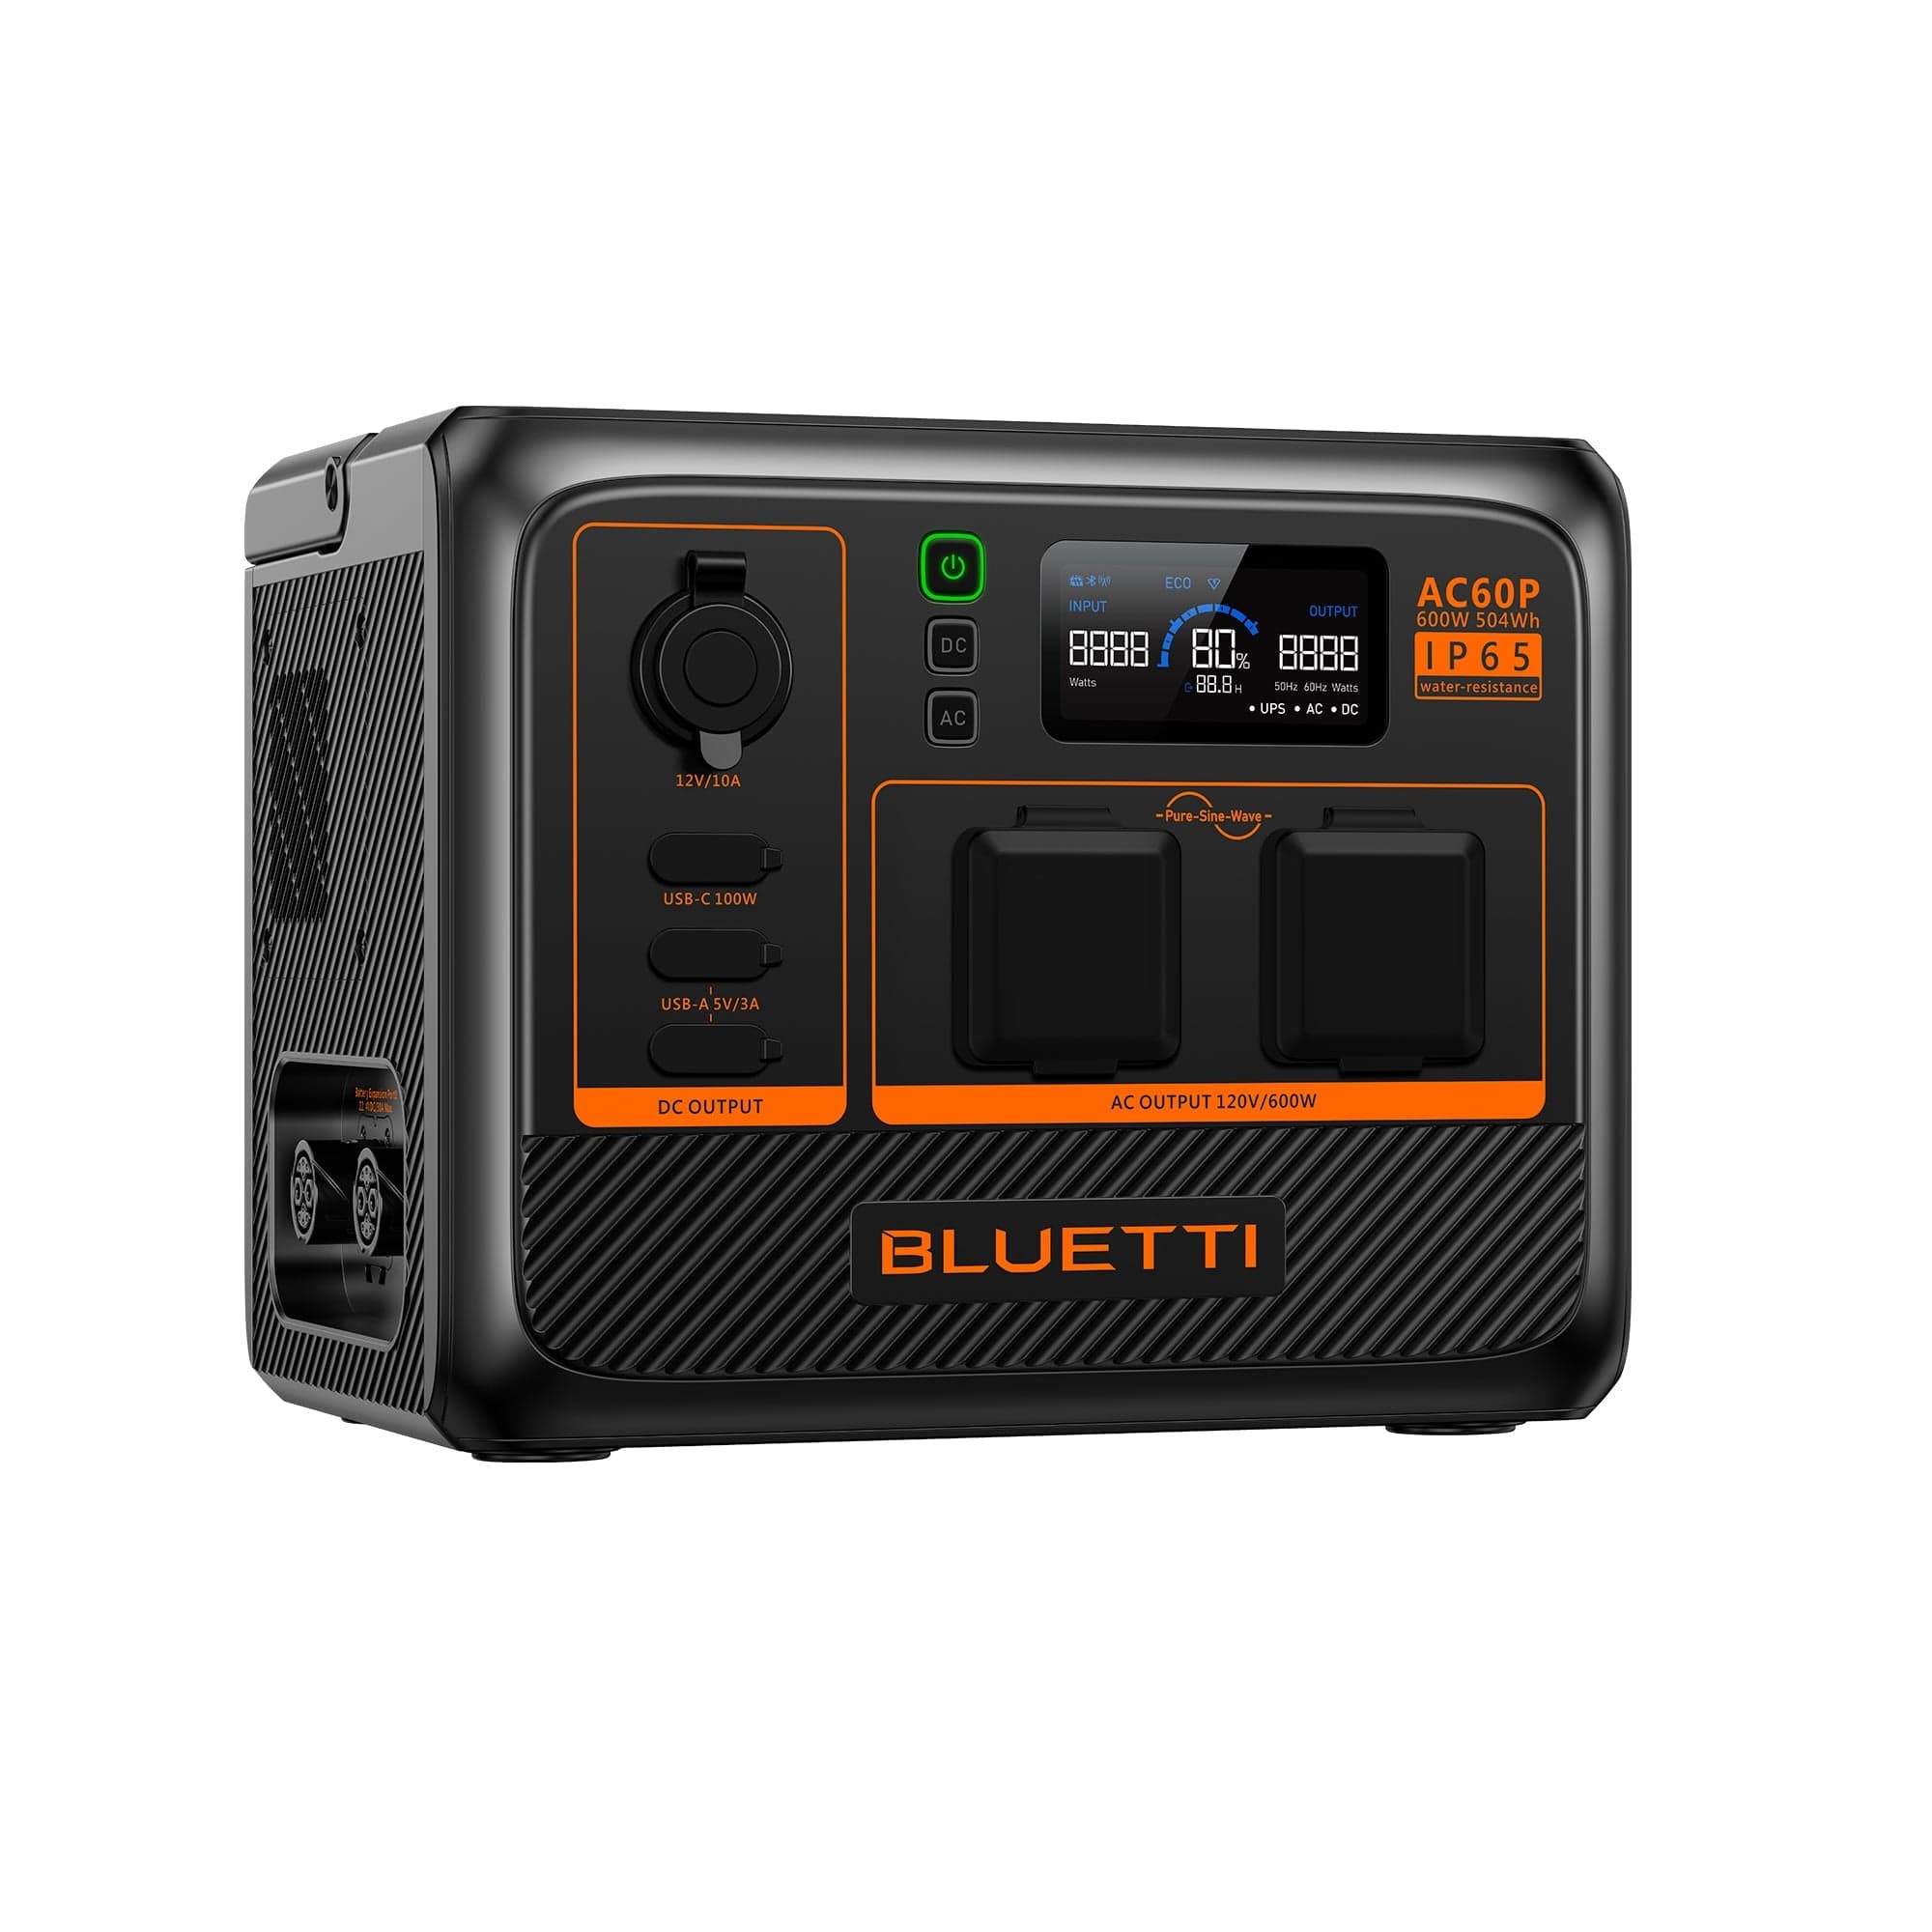 BLUETTI AC60P Portable Power Station | 600W 504Wh BLUETTI-US